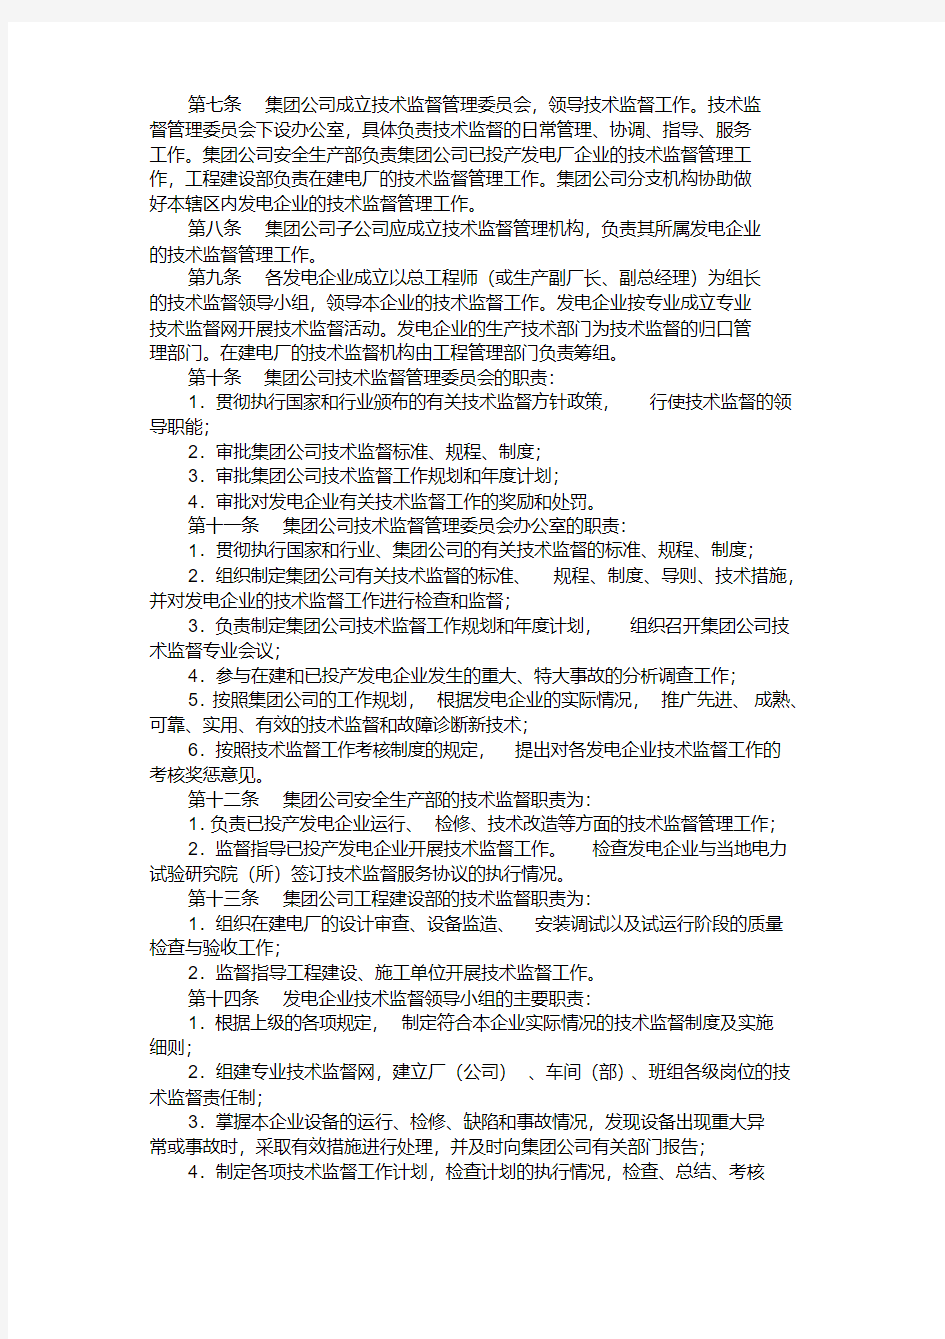 中国国电集团公司技术监督管理制度.pdf